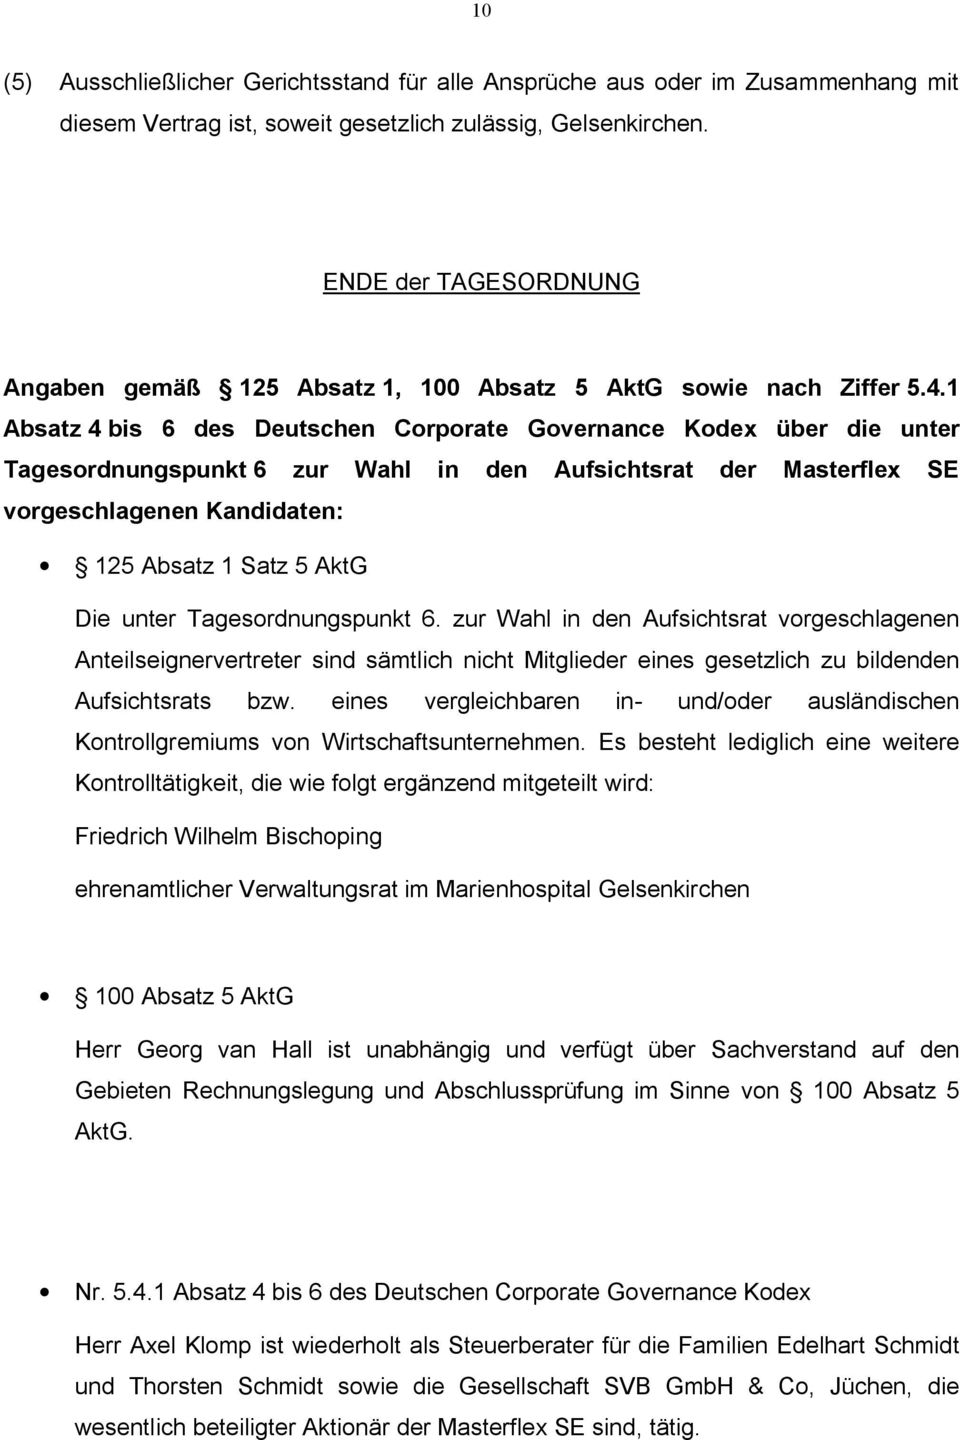 1 Absatz 4 bis 6 des Deutschen Corporate Governance Kodex über die unter Tagesordnungspunkt 6 zur Wahl in den Aufsichtsrat der Masterflex SE vorgeschlagenen Kandidaten: 125 Absatz 1 Satz 5 AktG Die